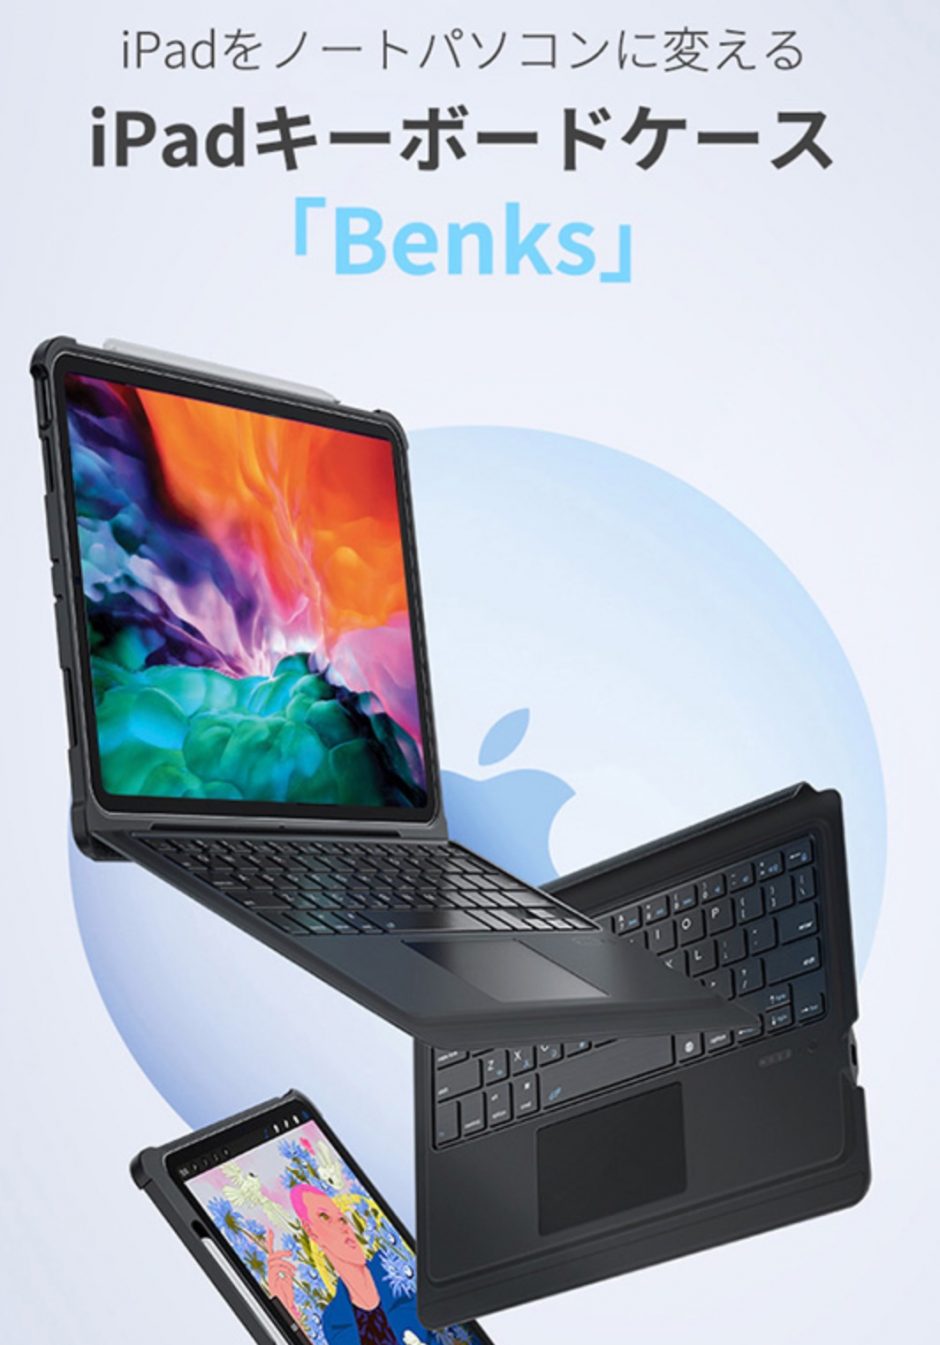 iPadがノートPCタイプになるキーボード付きケース「Benks」